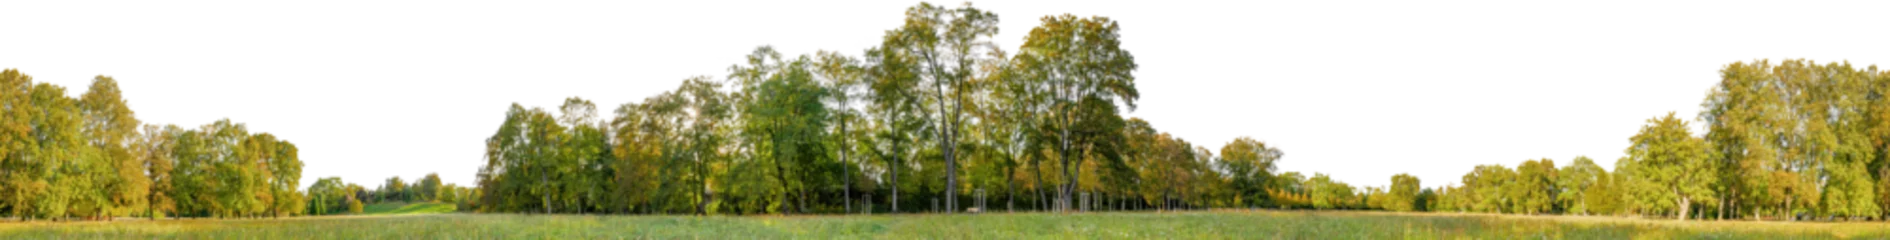 Gordijnen tree line trees autumn xl horizontal seamless arch viz cutout © Mathias Weil